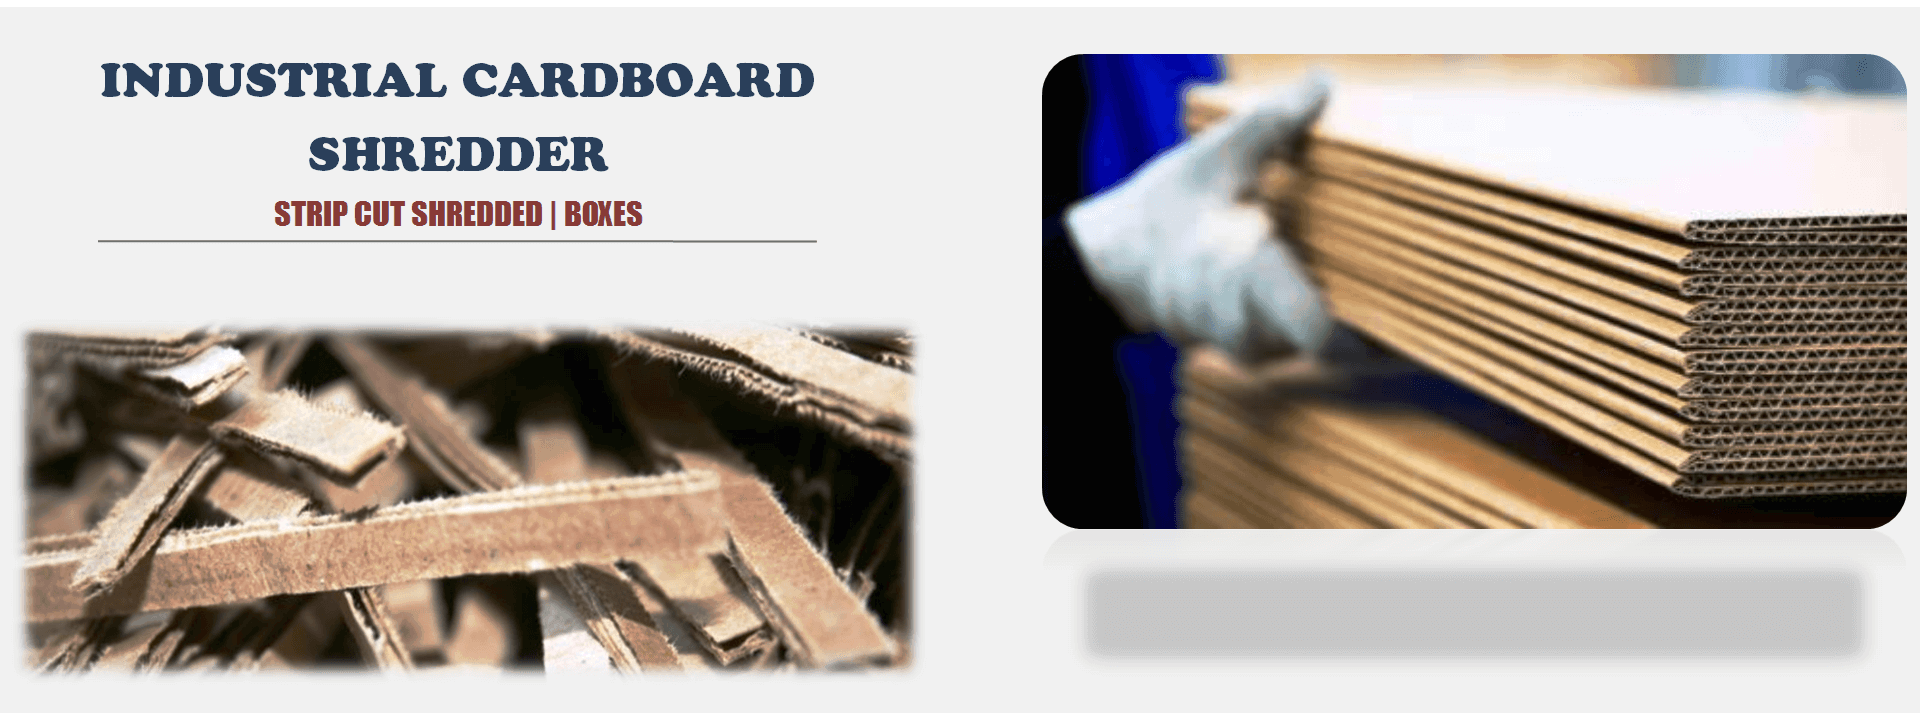 Industrial Cardboard Shredder Machine